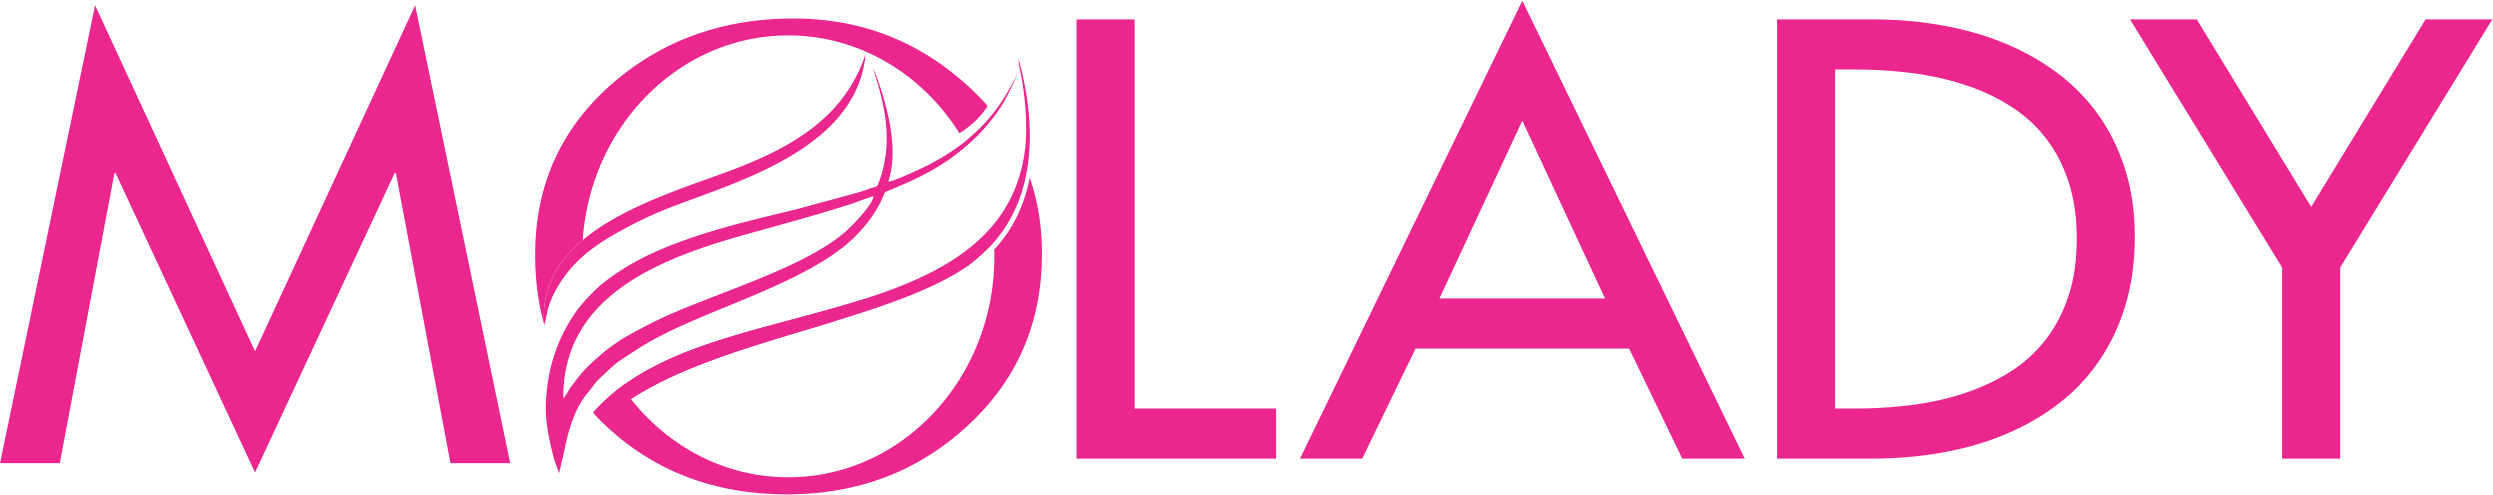 logo MOLADY